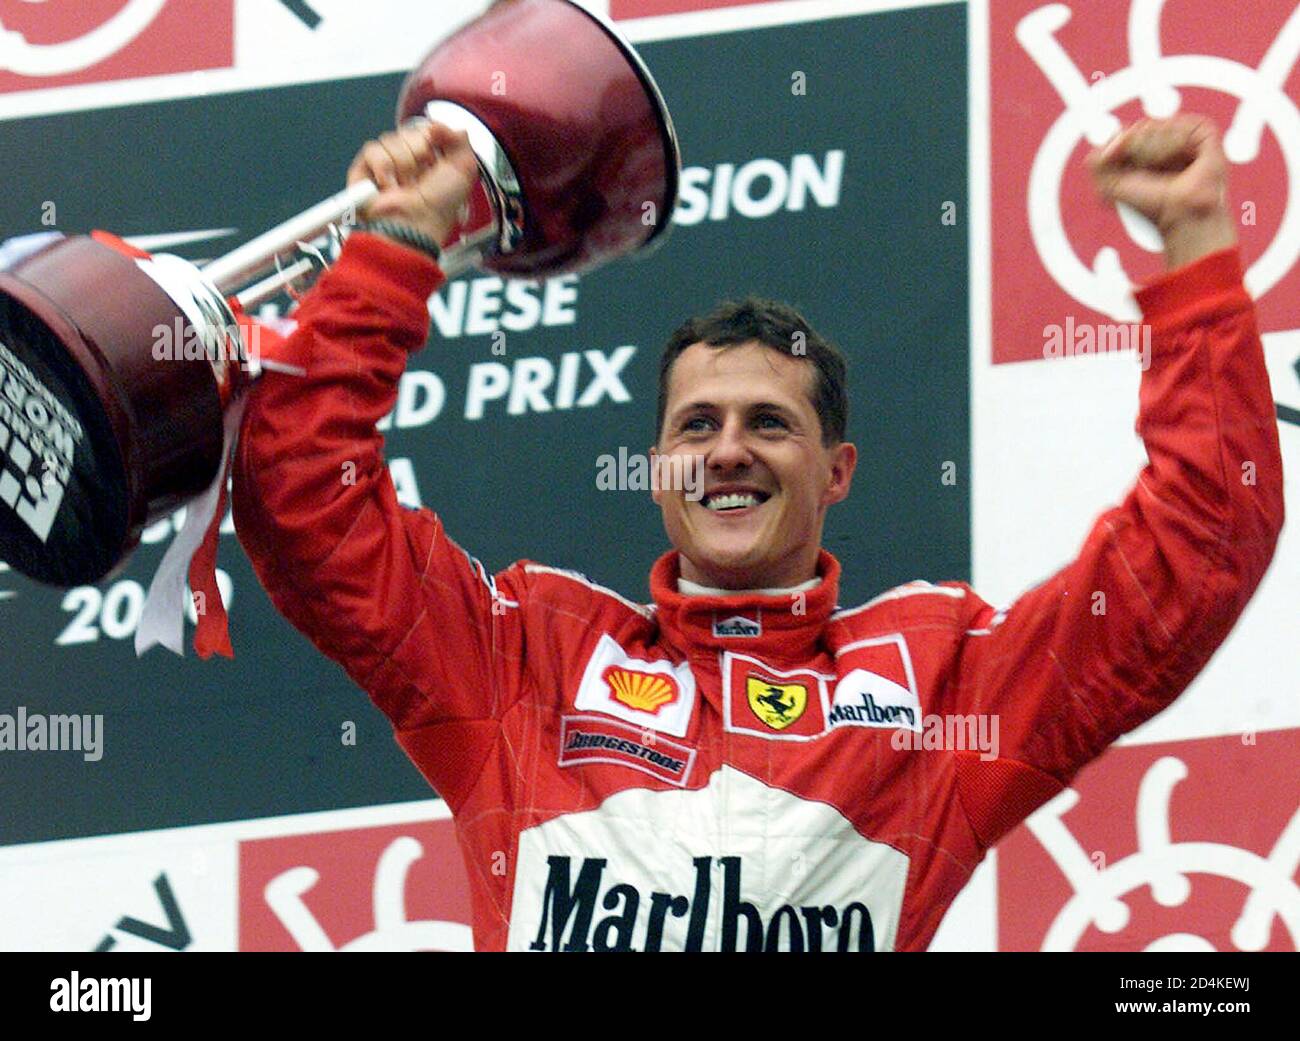 Michael Schumacher Deutschland wirft seine Trophäe, wie er seinen Sieg in  der Formel Eins japanischen Grand Prix und der Fahrer WM-Titel auf dem  Suzuka Circuit 8. Oktober 2000 feiert. [Mika Häkkinen Finnlands